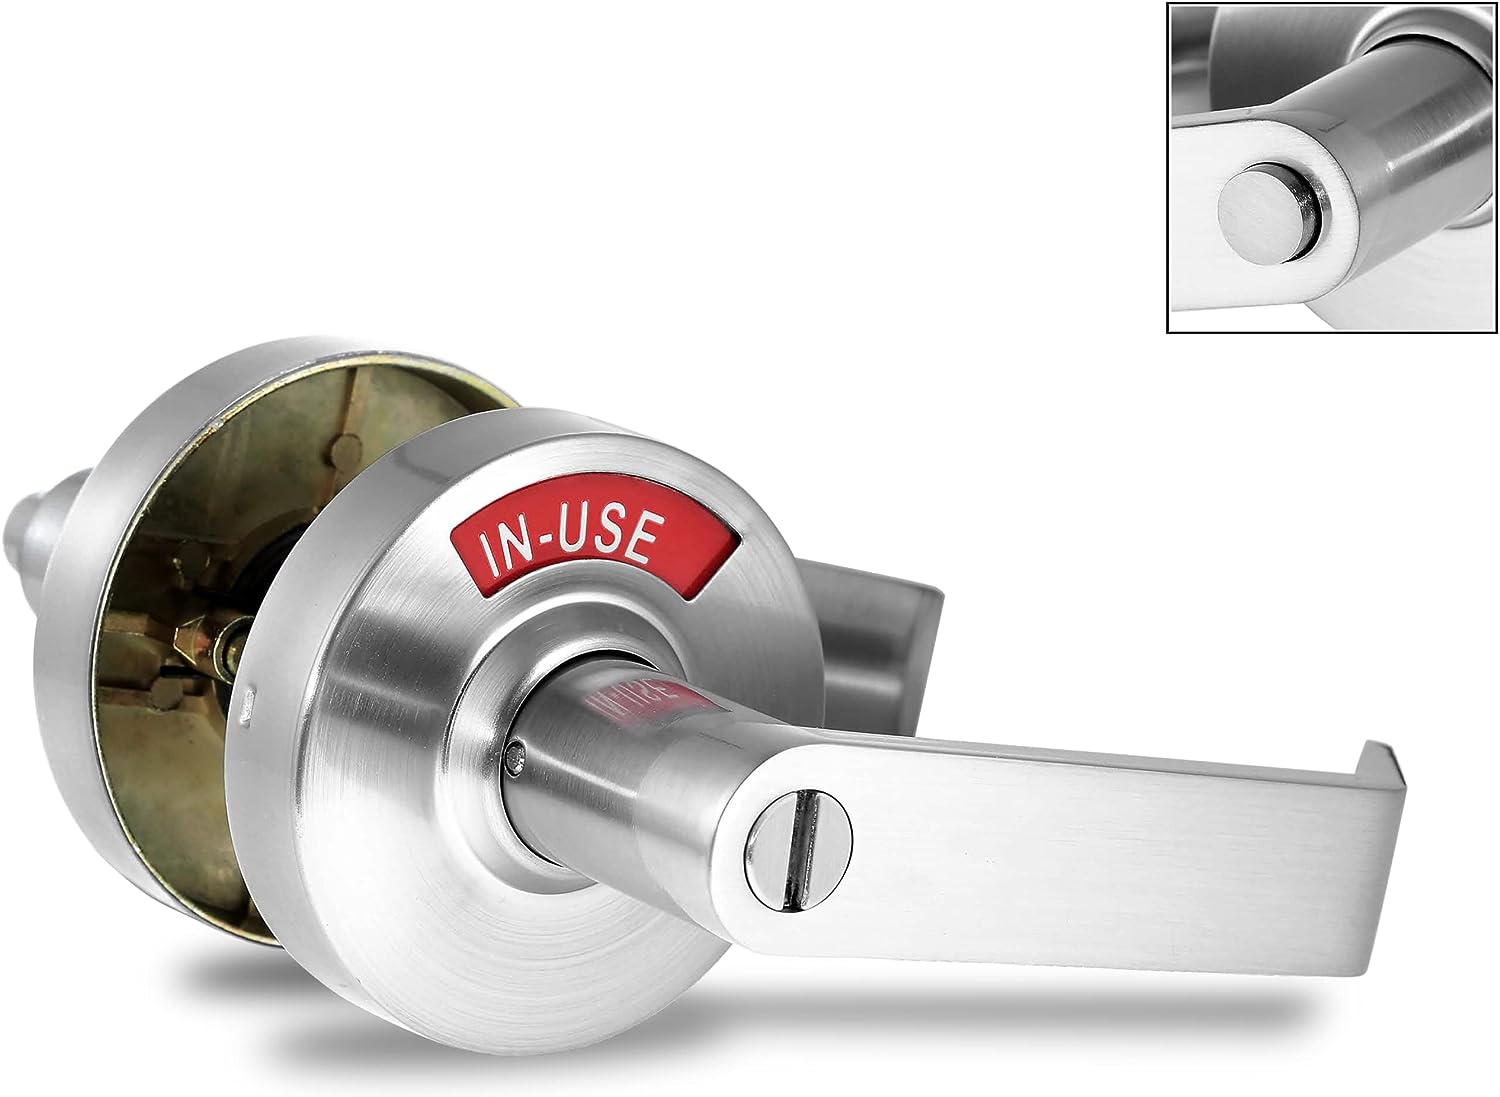 Rok Hardware Satin Nickel Privacy Home Bedroom Closet Door Handle